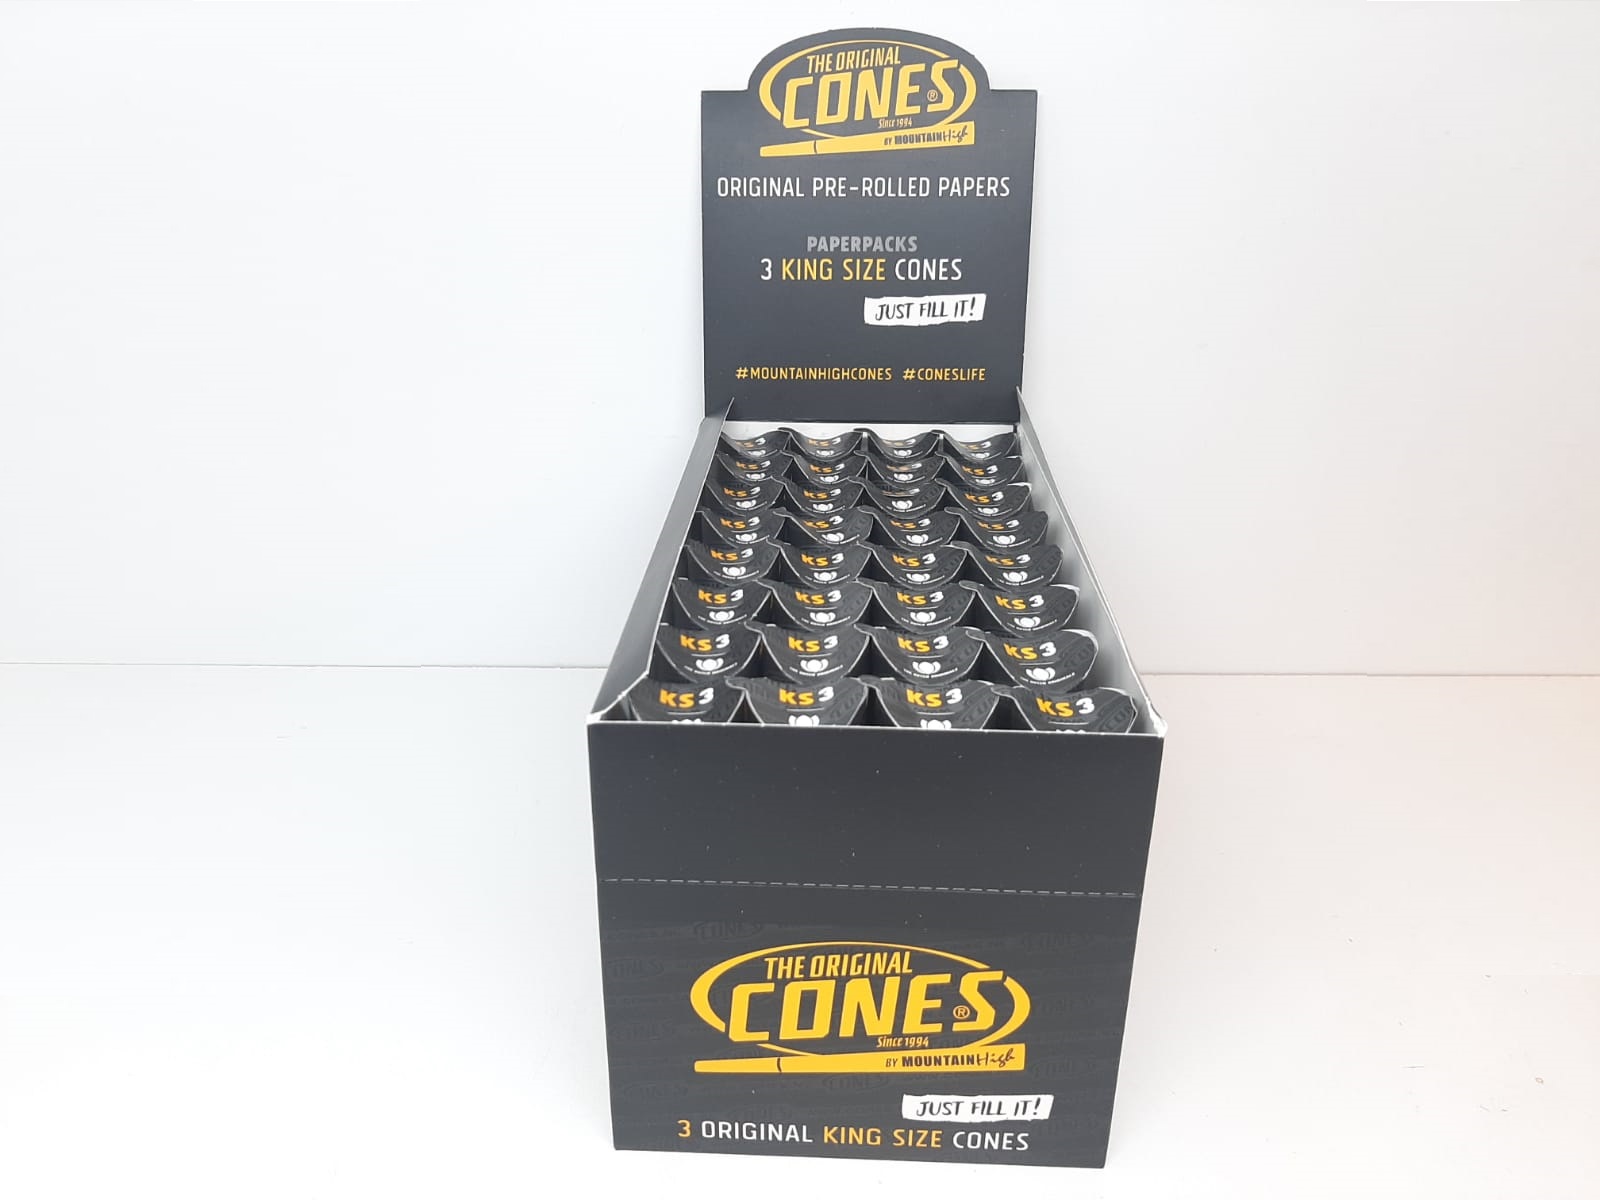 DISPLAY: Cones Färdigrullade koniska papper (32 förpackningar)